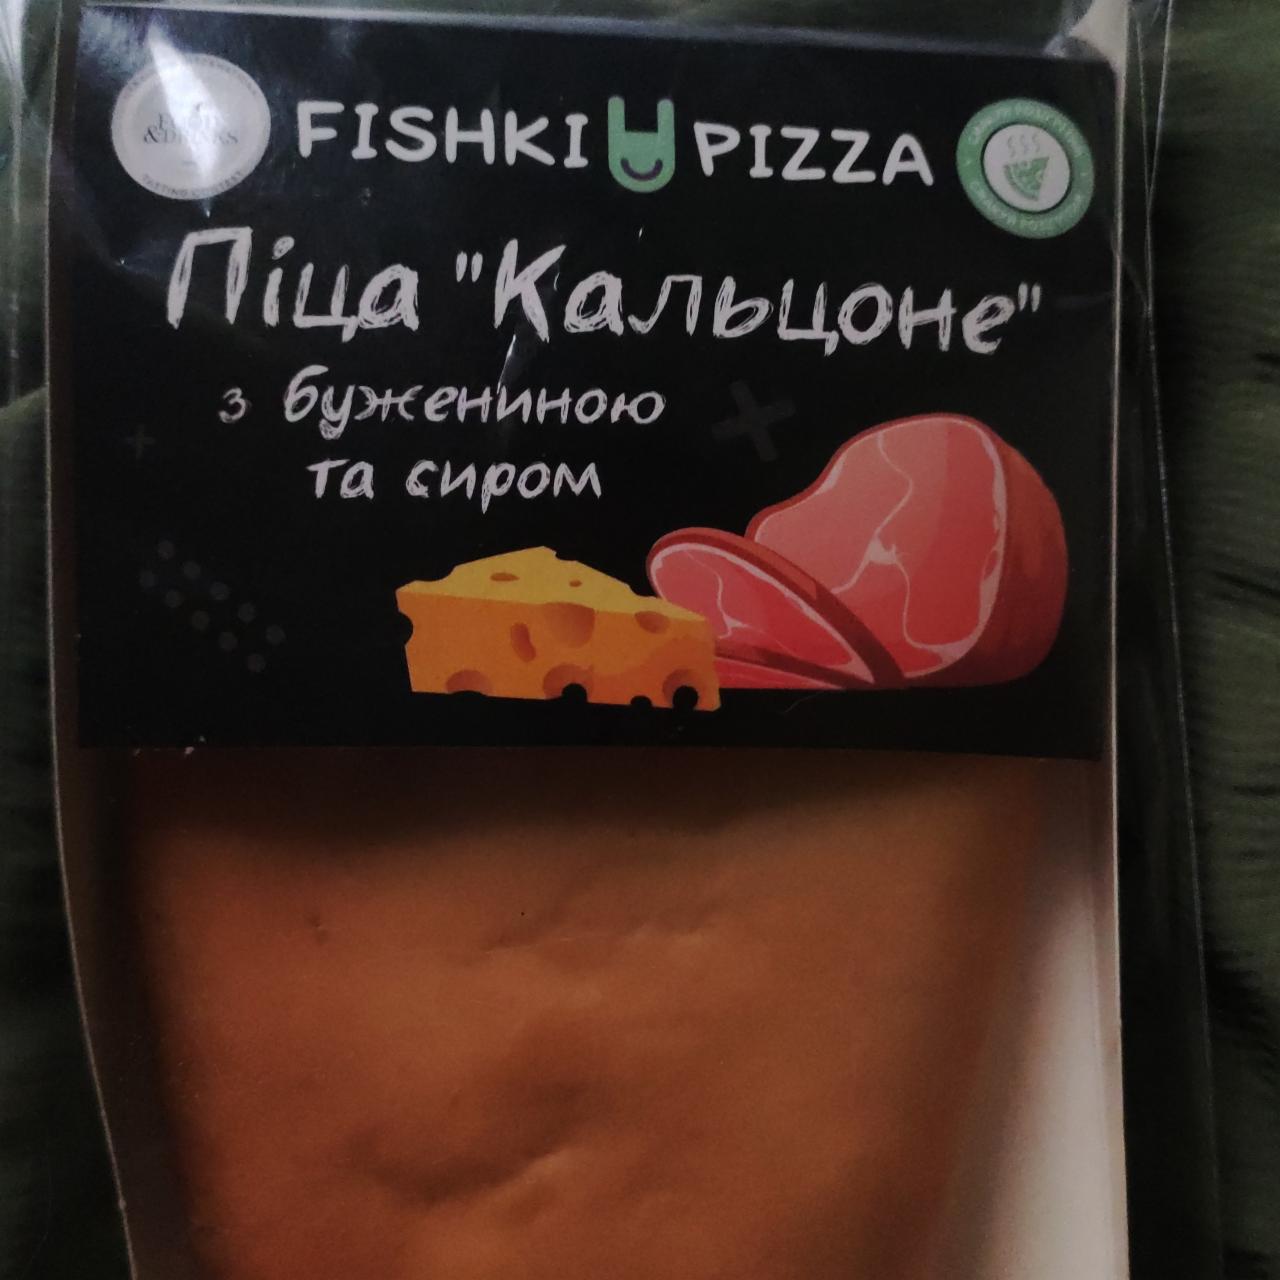 Фото - Піца кальцоне з бужениною та сиром Fishki Pizza